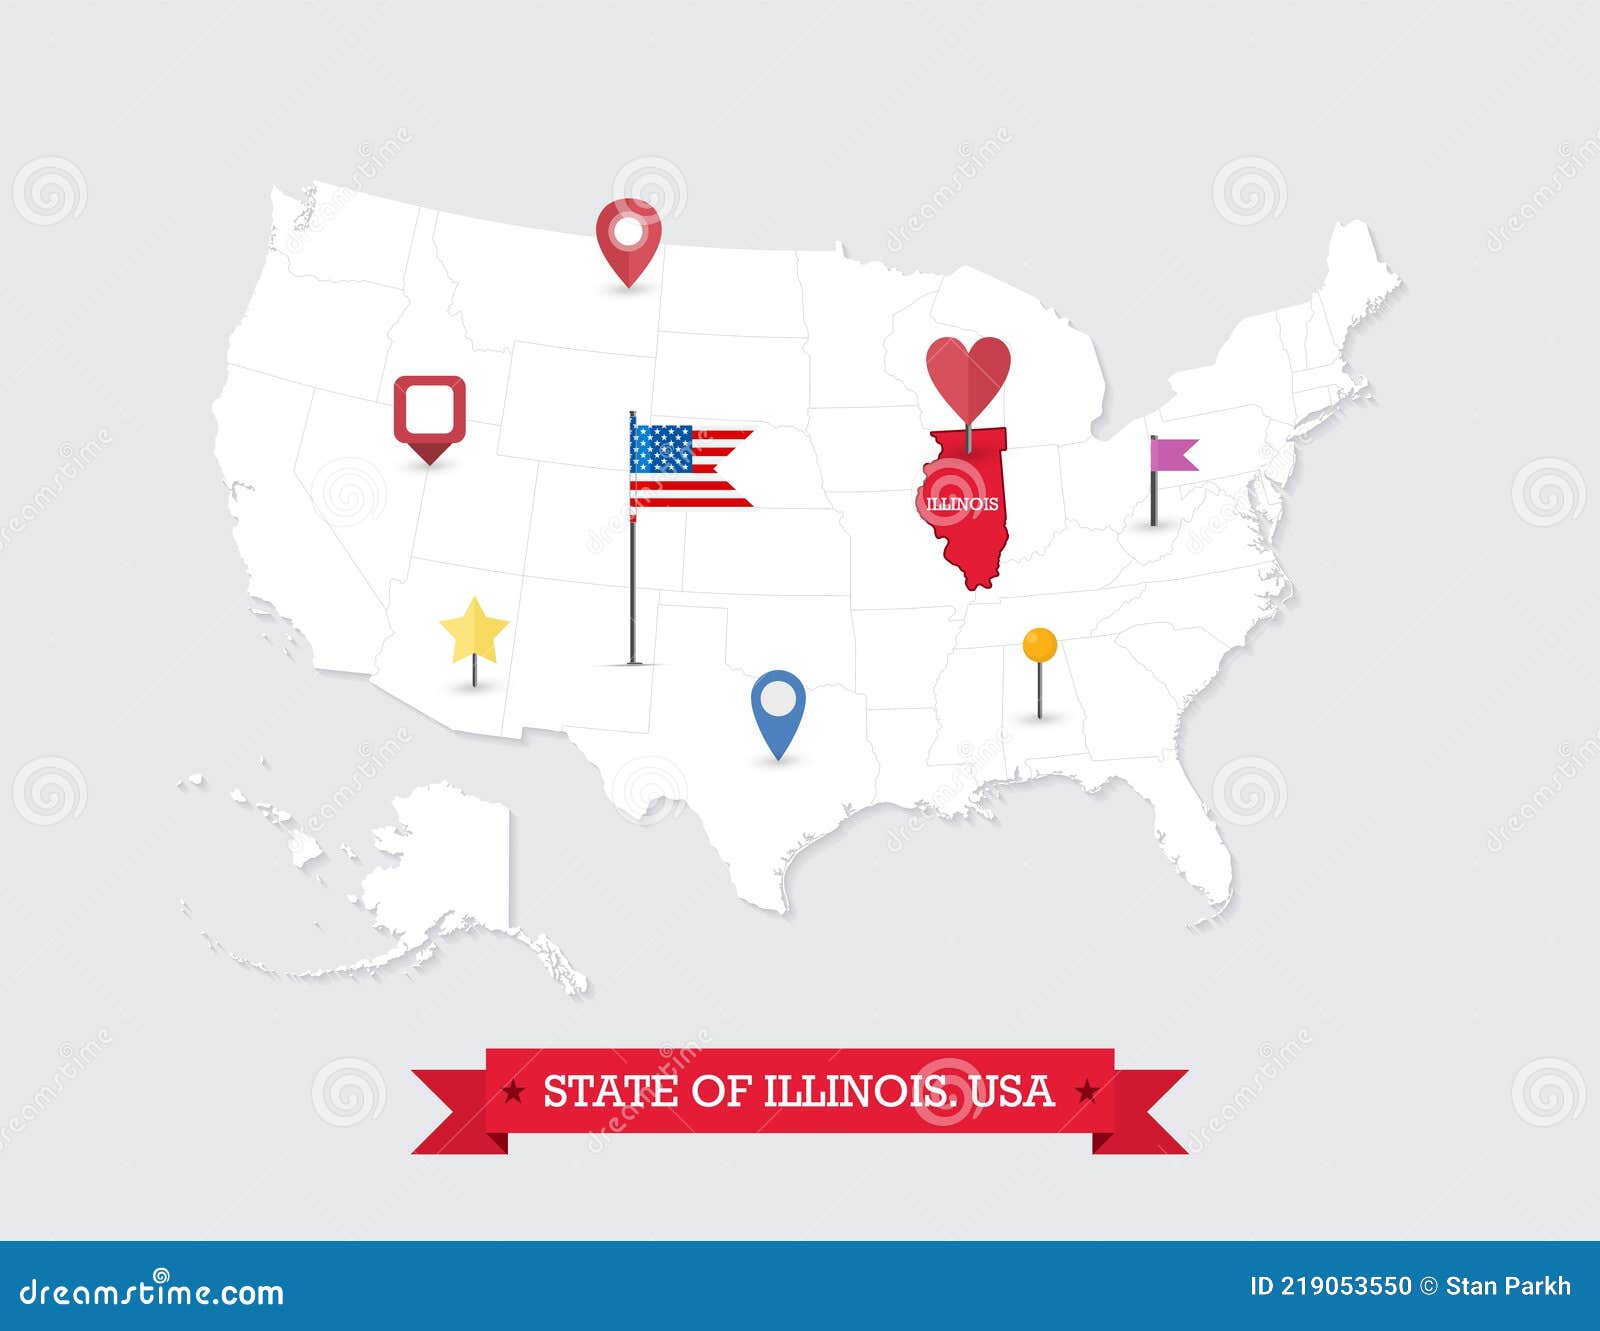 Иллинойс на карте. Штат Иллинойс на карте. Иллинойс на карте США. Штат Иллинойс на карте США. Город Тибет штат Иллинойс на карте.